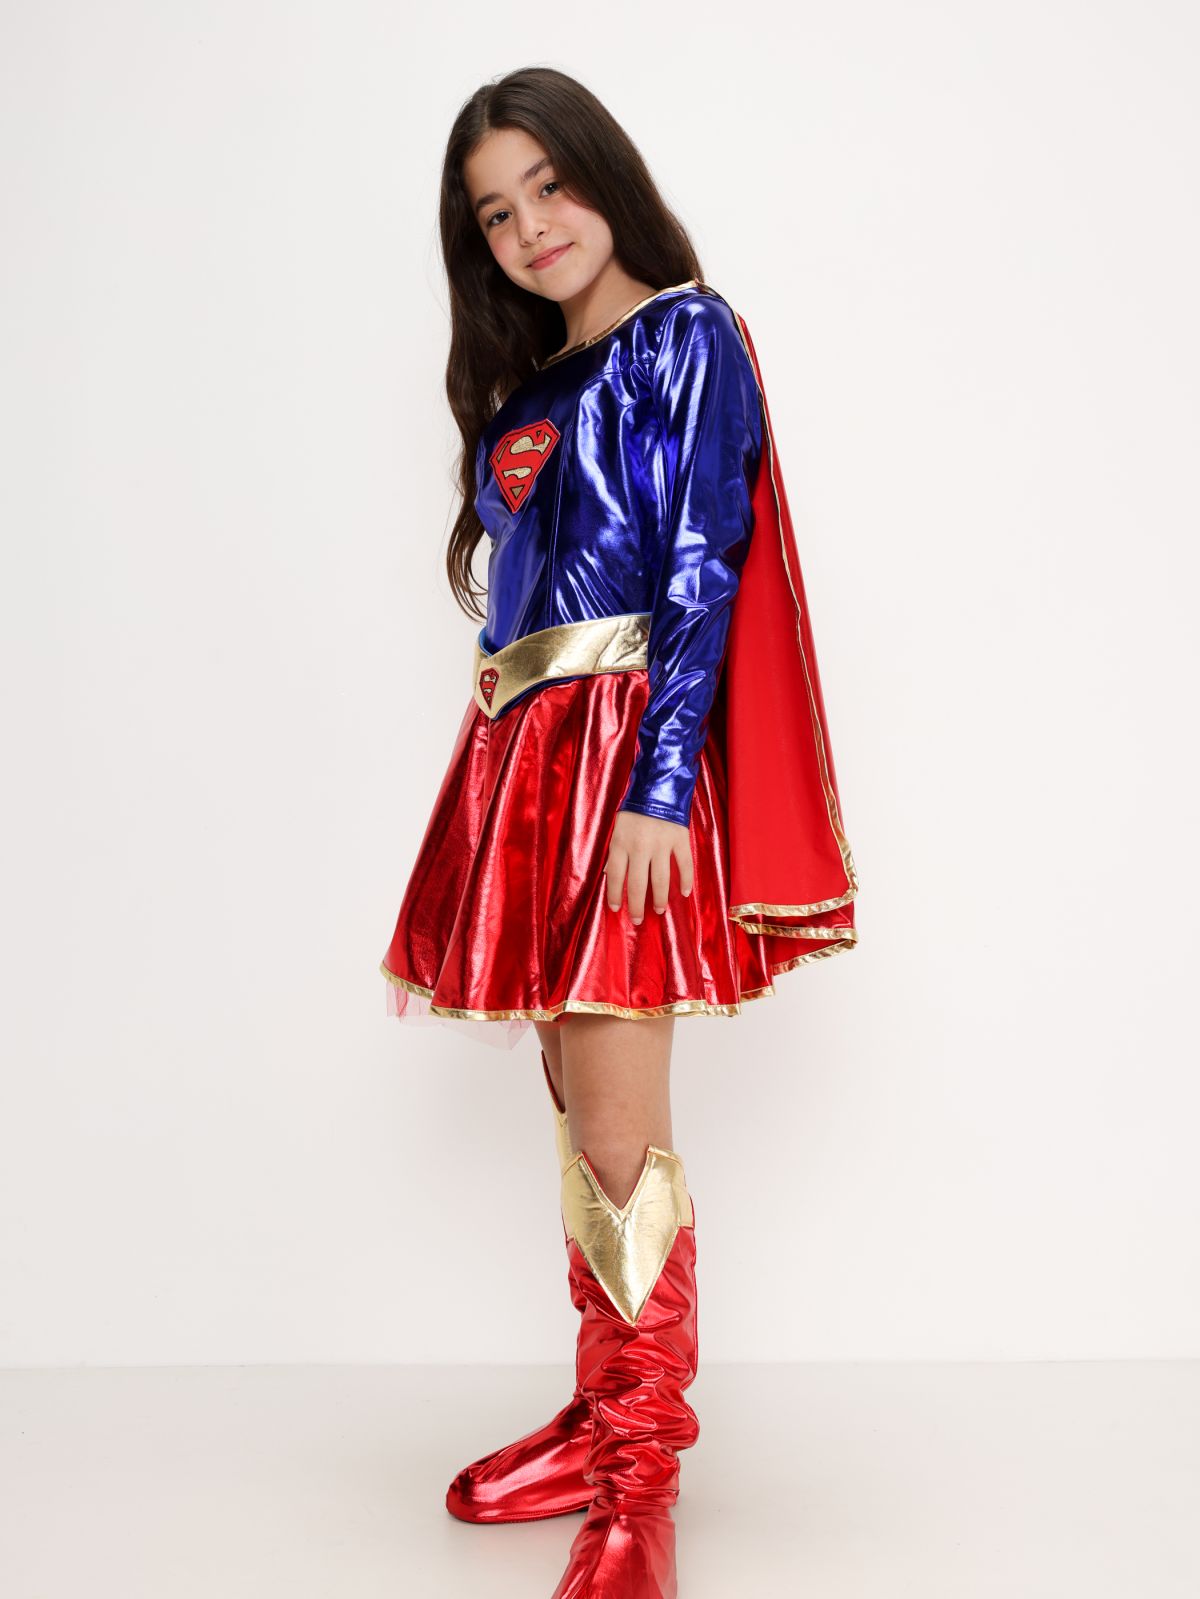  תחפושת סופרגירל Supergirl לנערות / תחפושת לפורים של SHOSHI ZOHAR